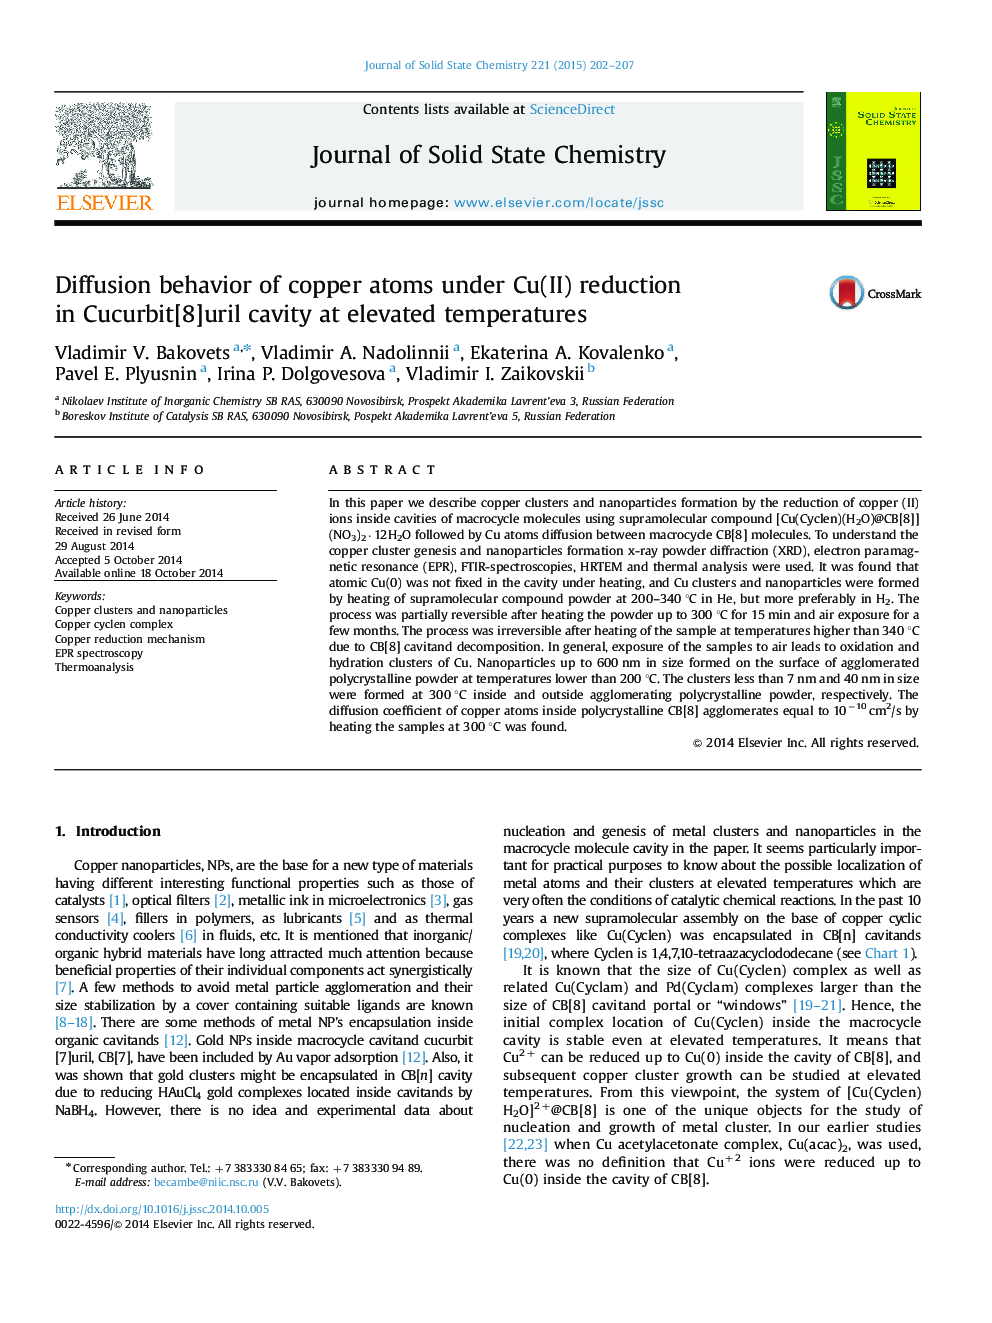 Diffusion behavior of copper atoms under Cu(II) reduction in Cucurbit[8]uril cavity at elevated temperatures